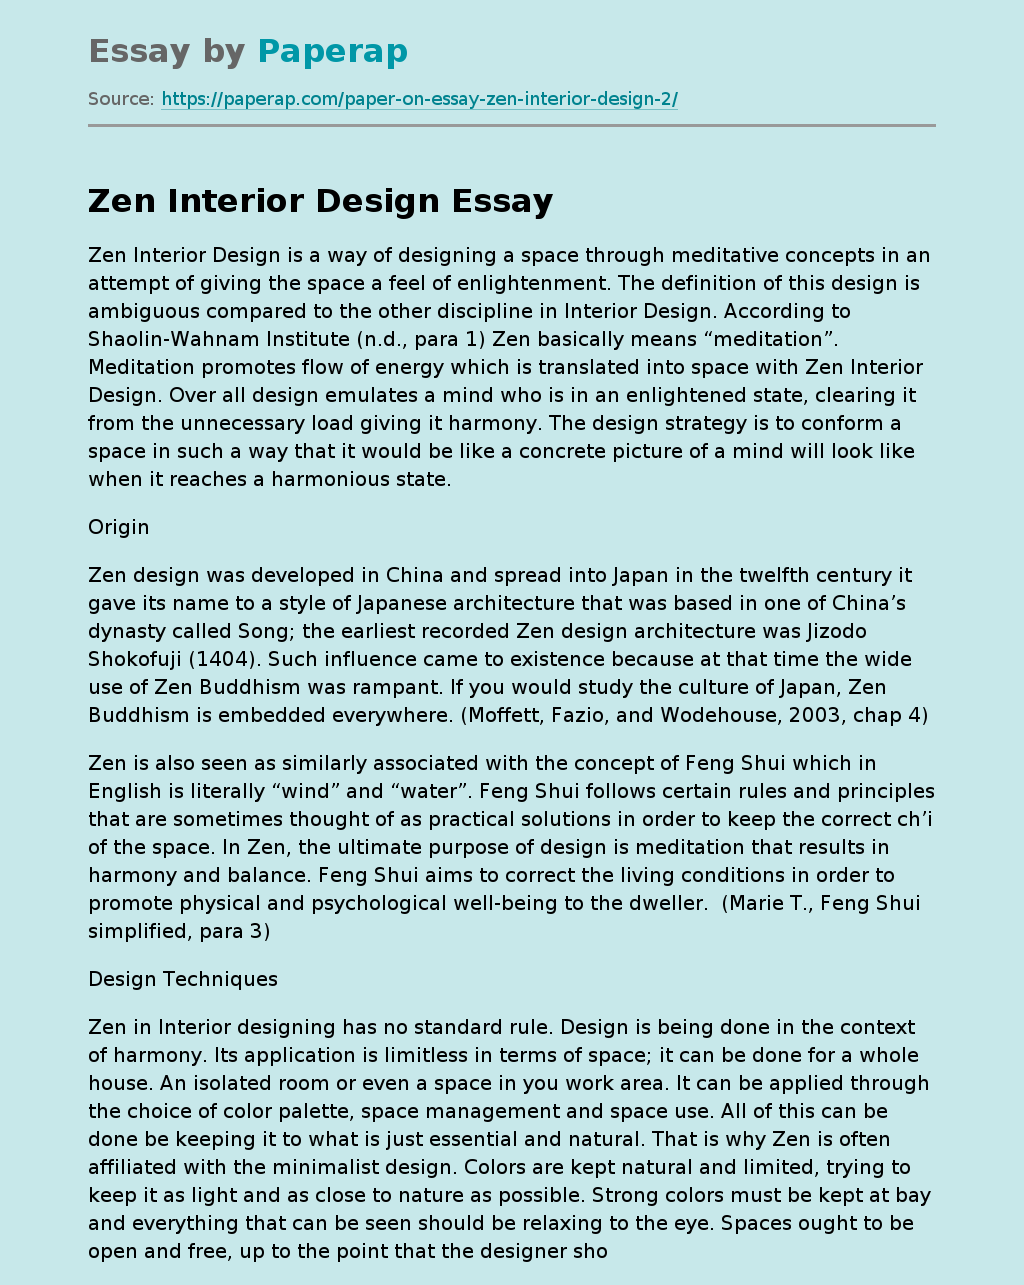 Zen Interior Design Techniques